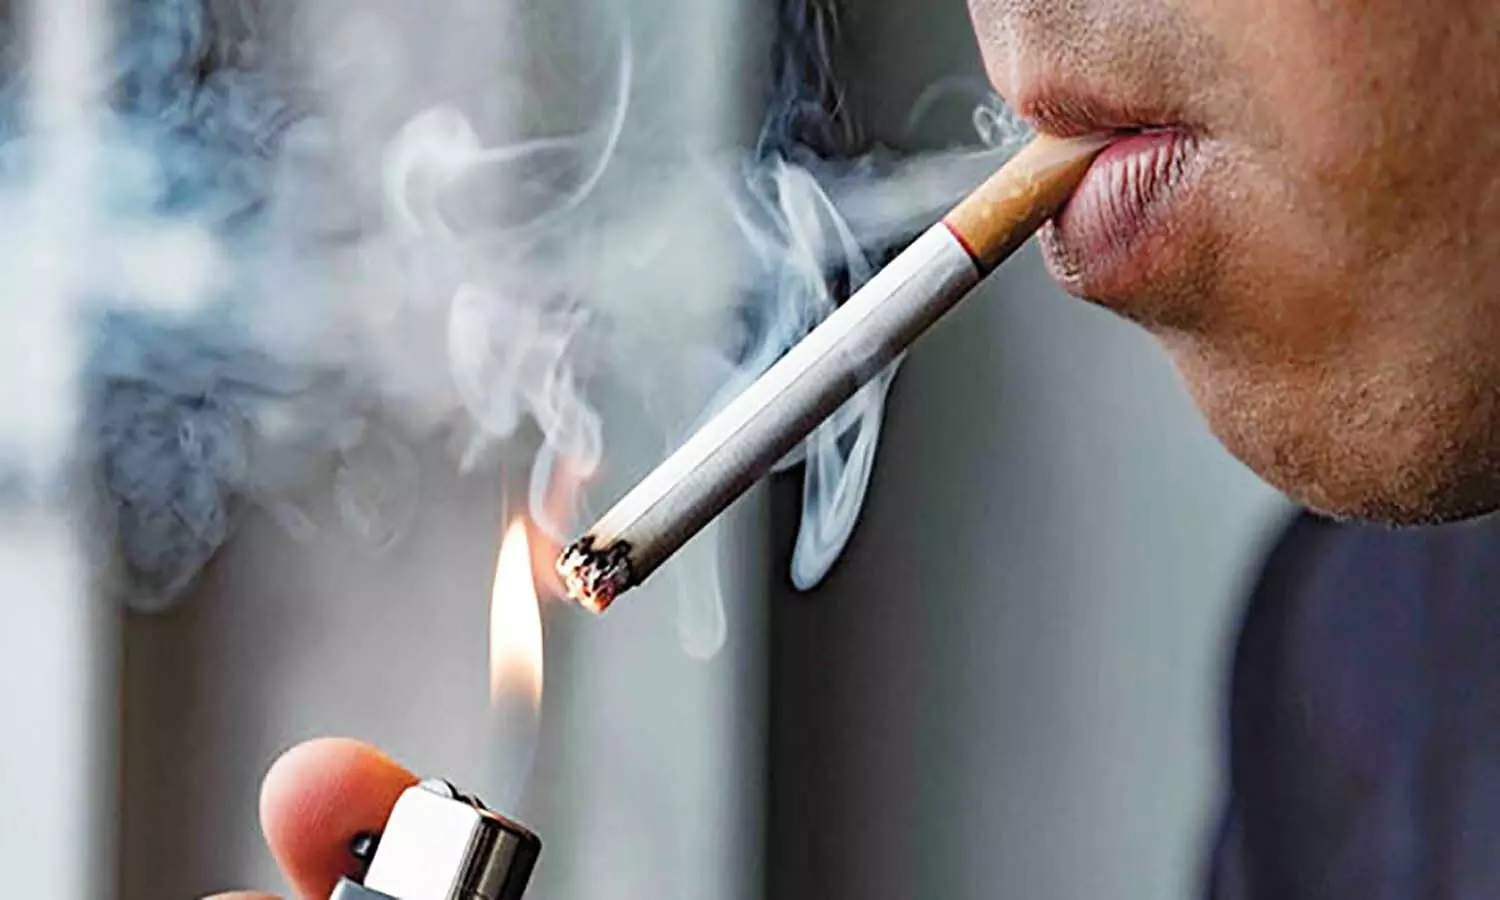 संसद की स्थायी समिति की सिफारिशों के बाद सिंगल सिगरेट बेचने पर लग सकती है रोक